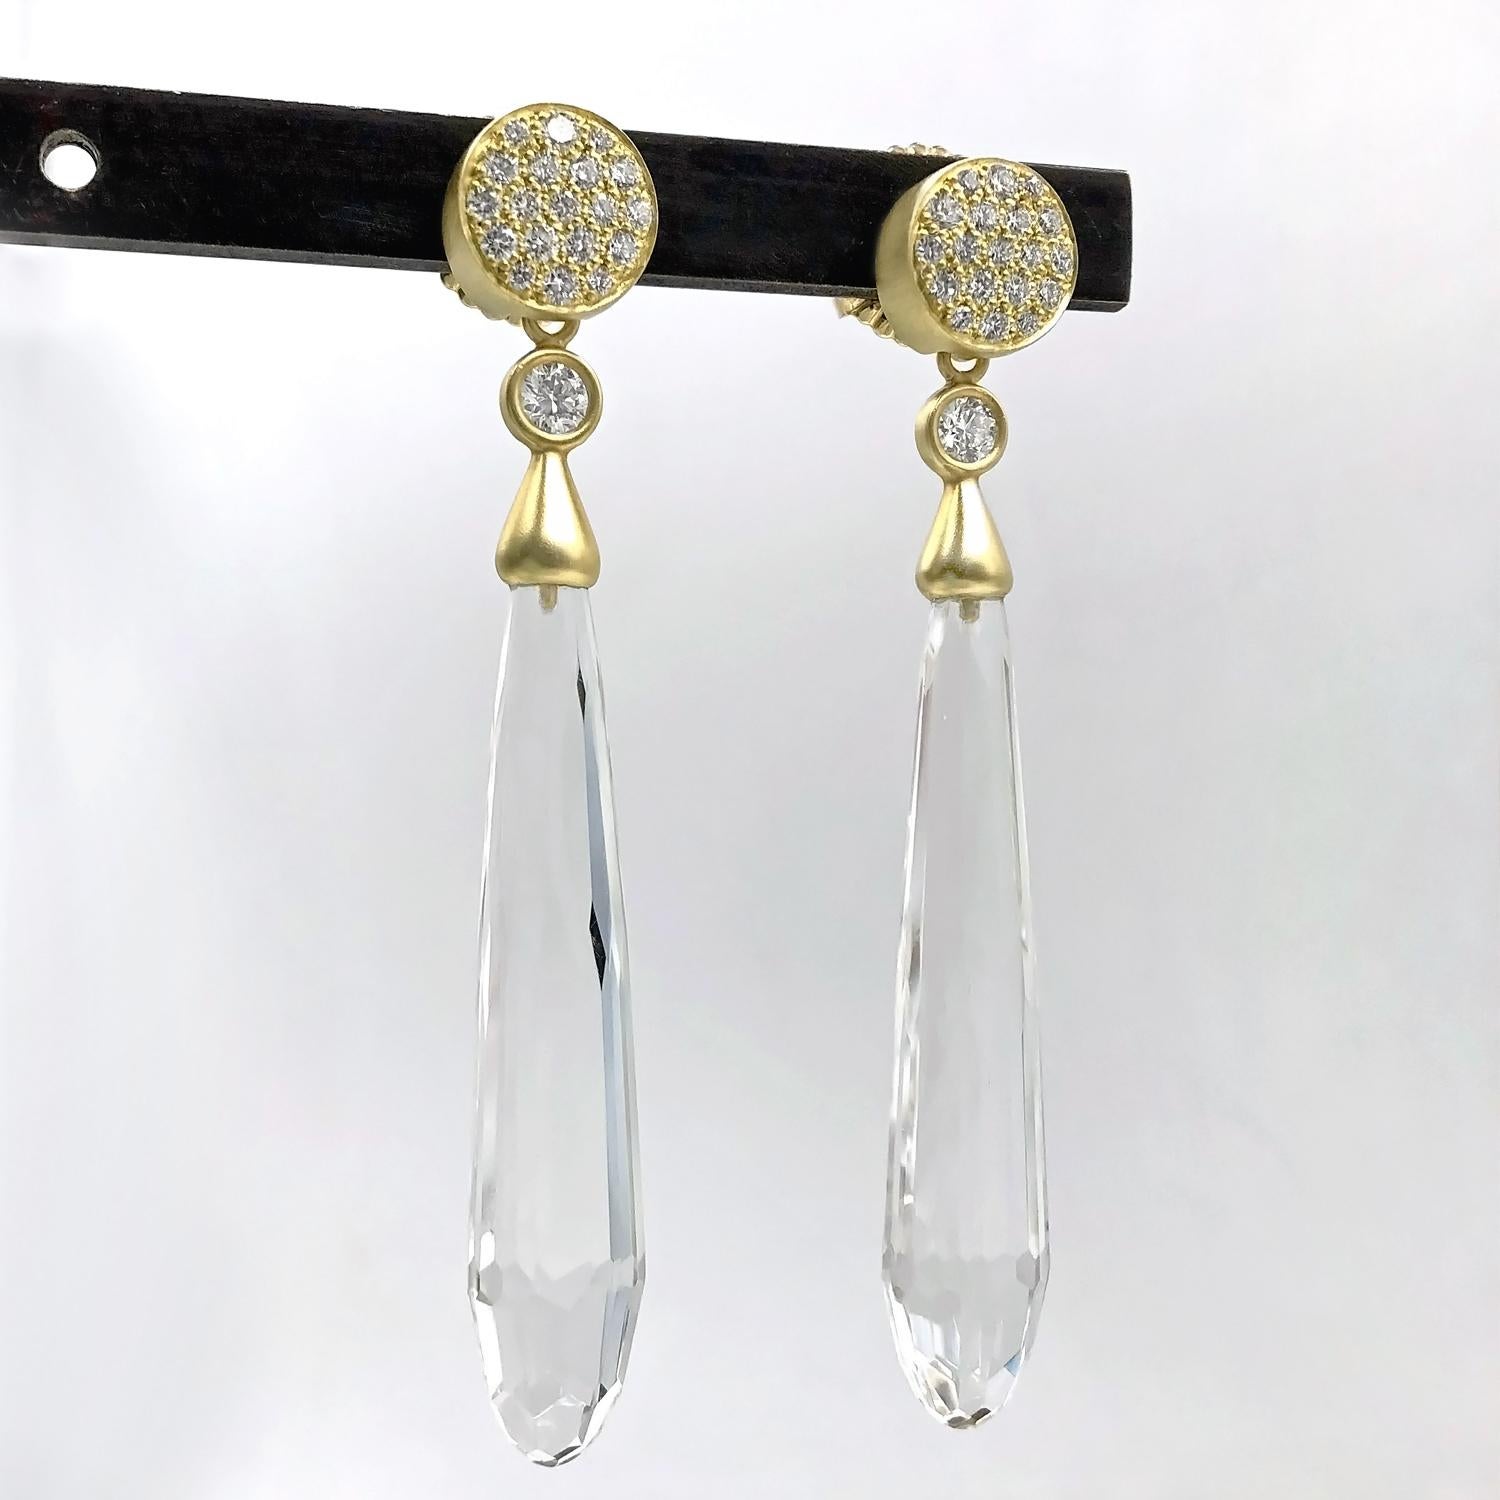 Deux boucles d'oreilles en une ! Ces boucles d'oreilles uniques, fabriquées à la main par l'artiste Susan Sadler, mettent en valeur une paire de gouttes détachables en cristal de roche facetté, serties de deux diamants blancs ronds de taille